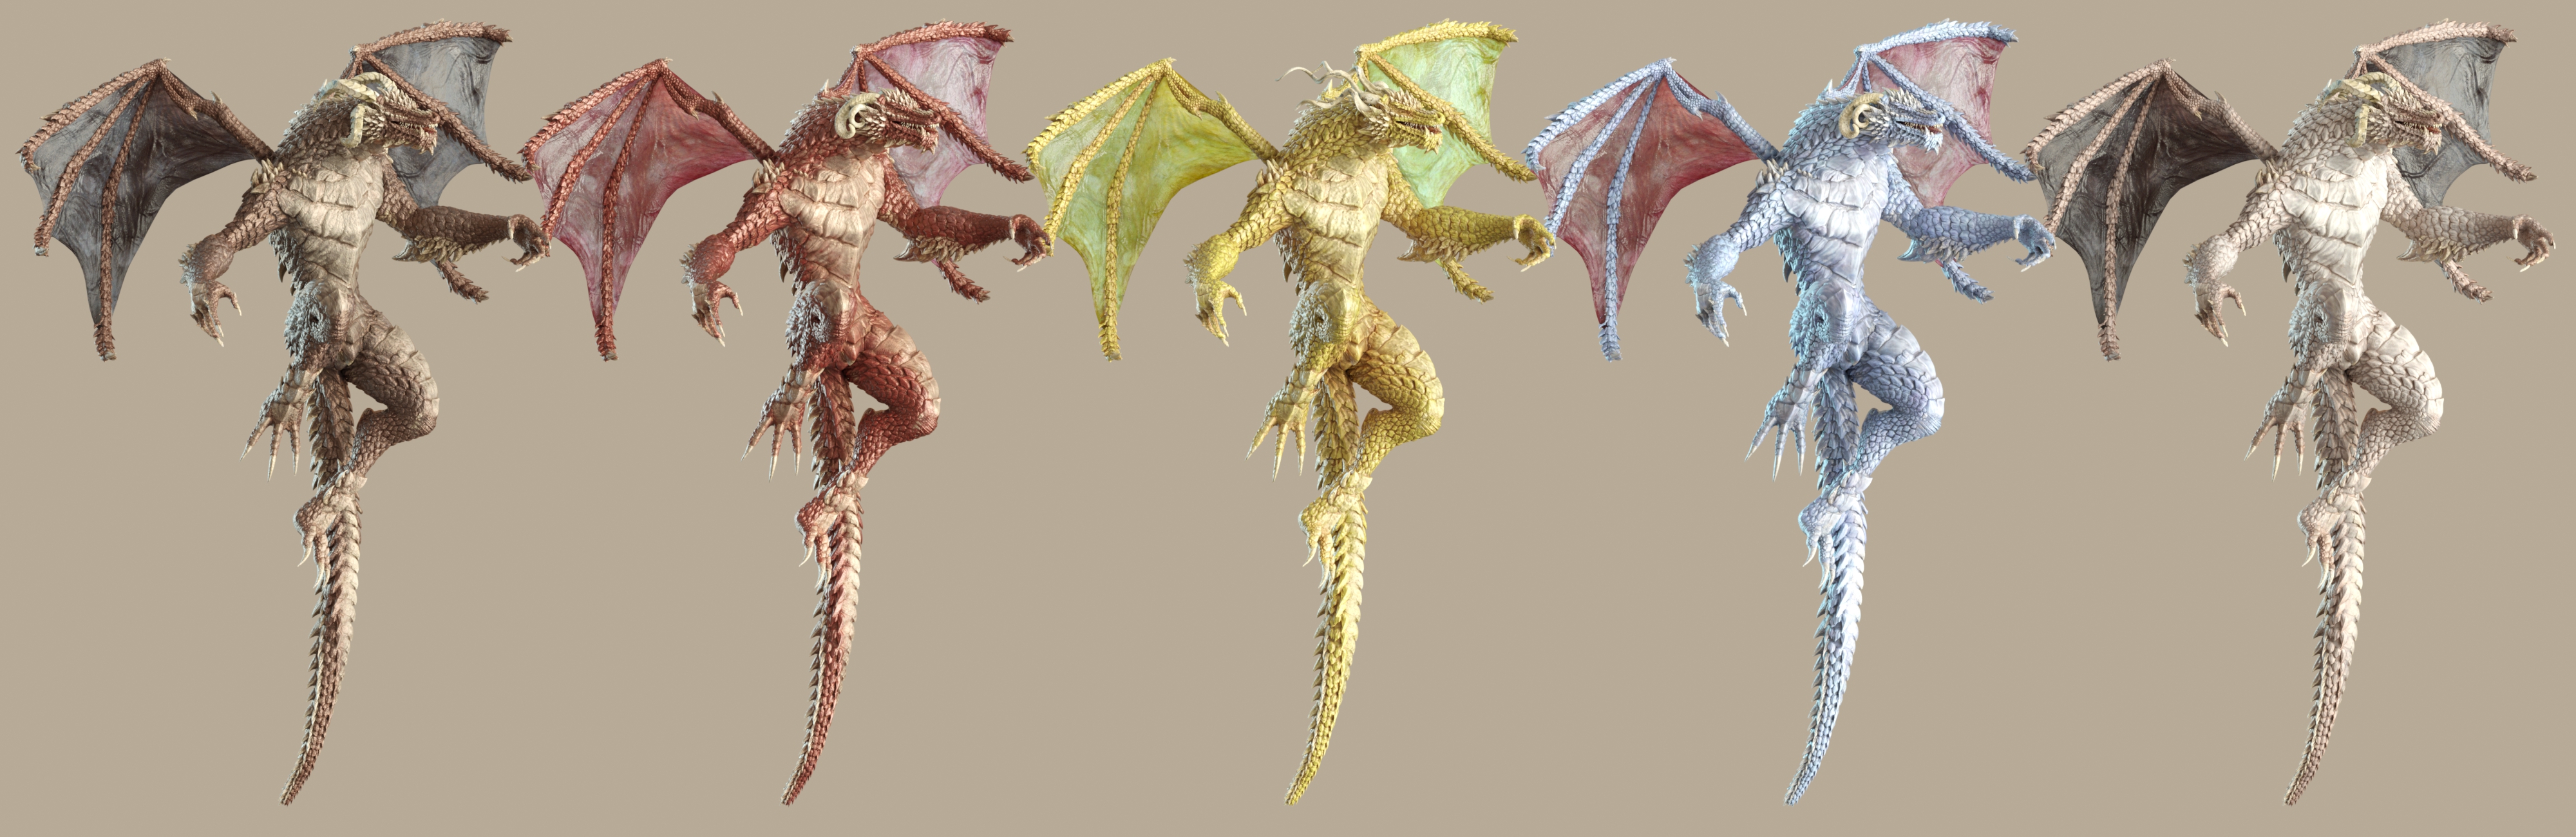 Drago for Genesis 8 Male(s) by: JoeQuick, 3D Models by Daz 3D